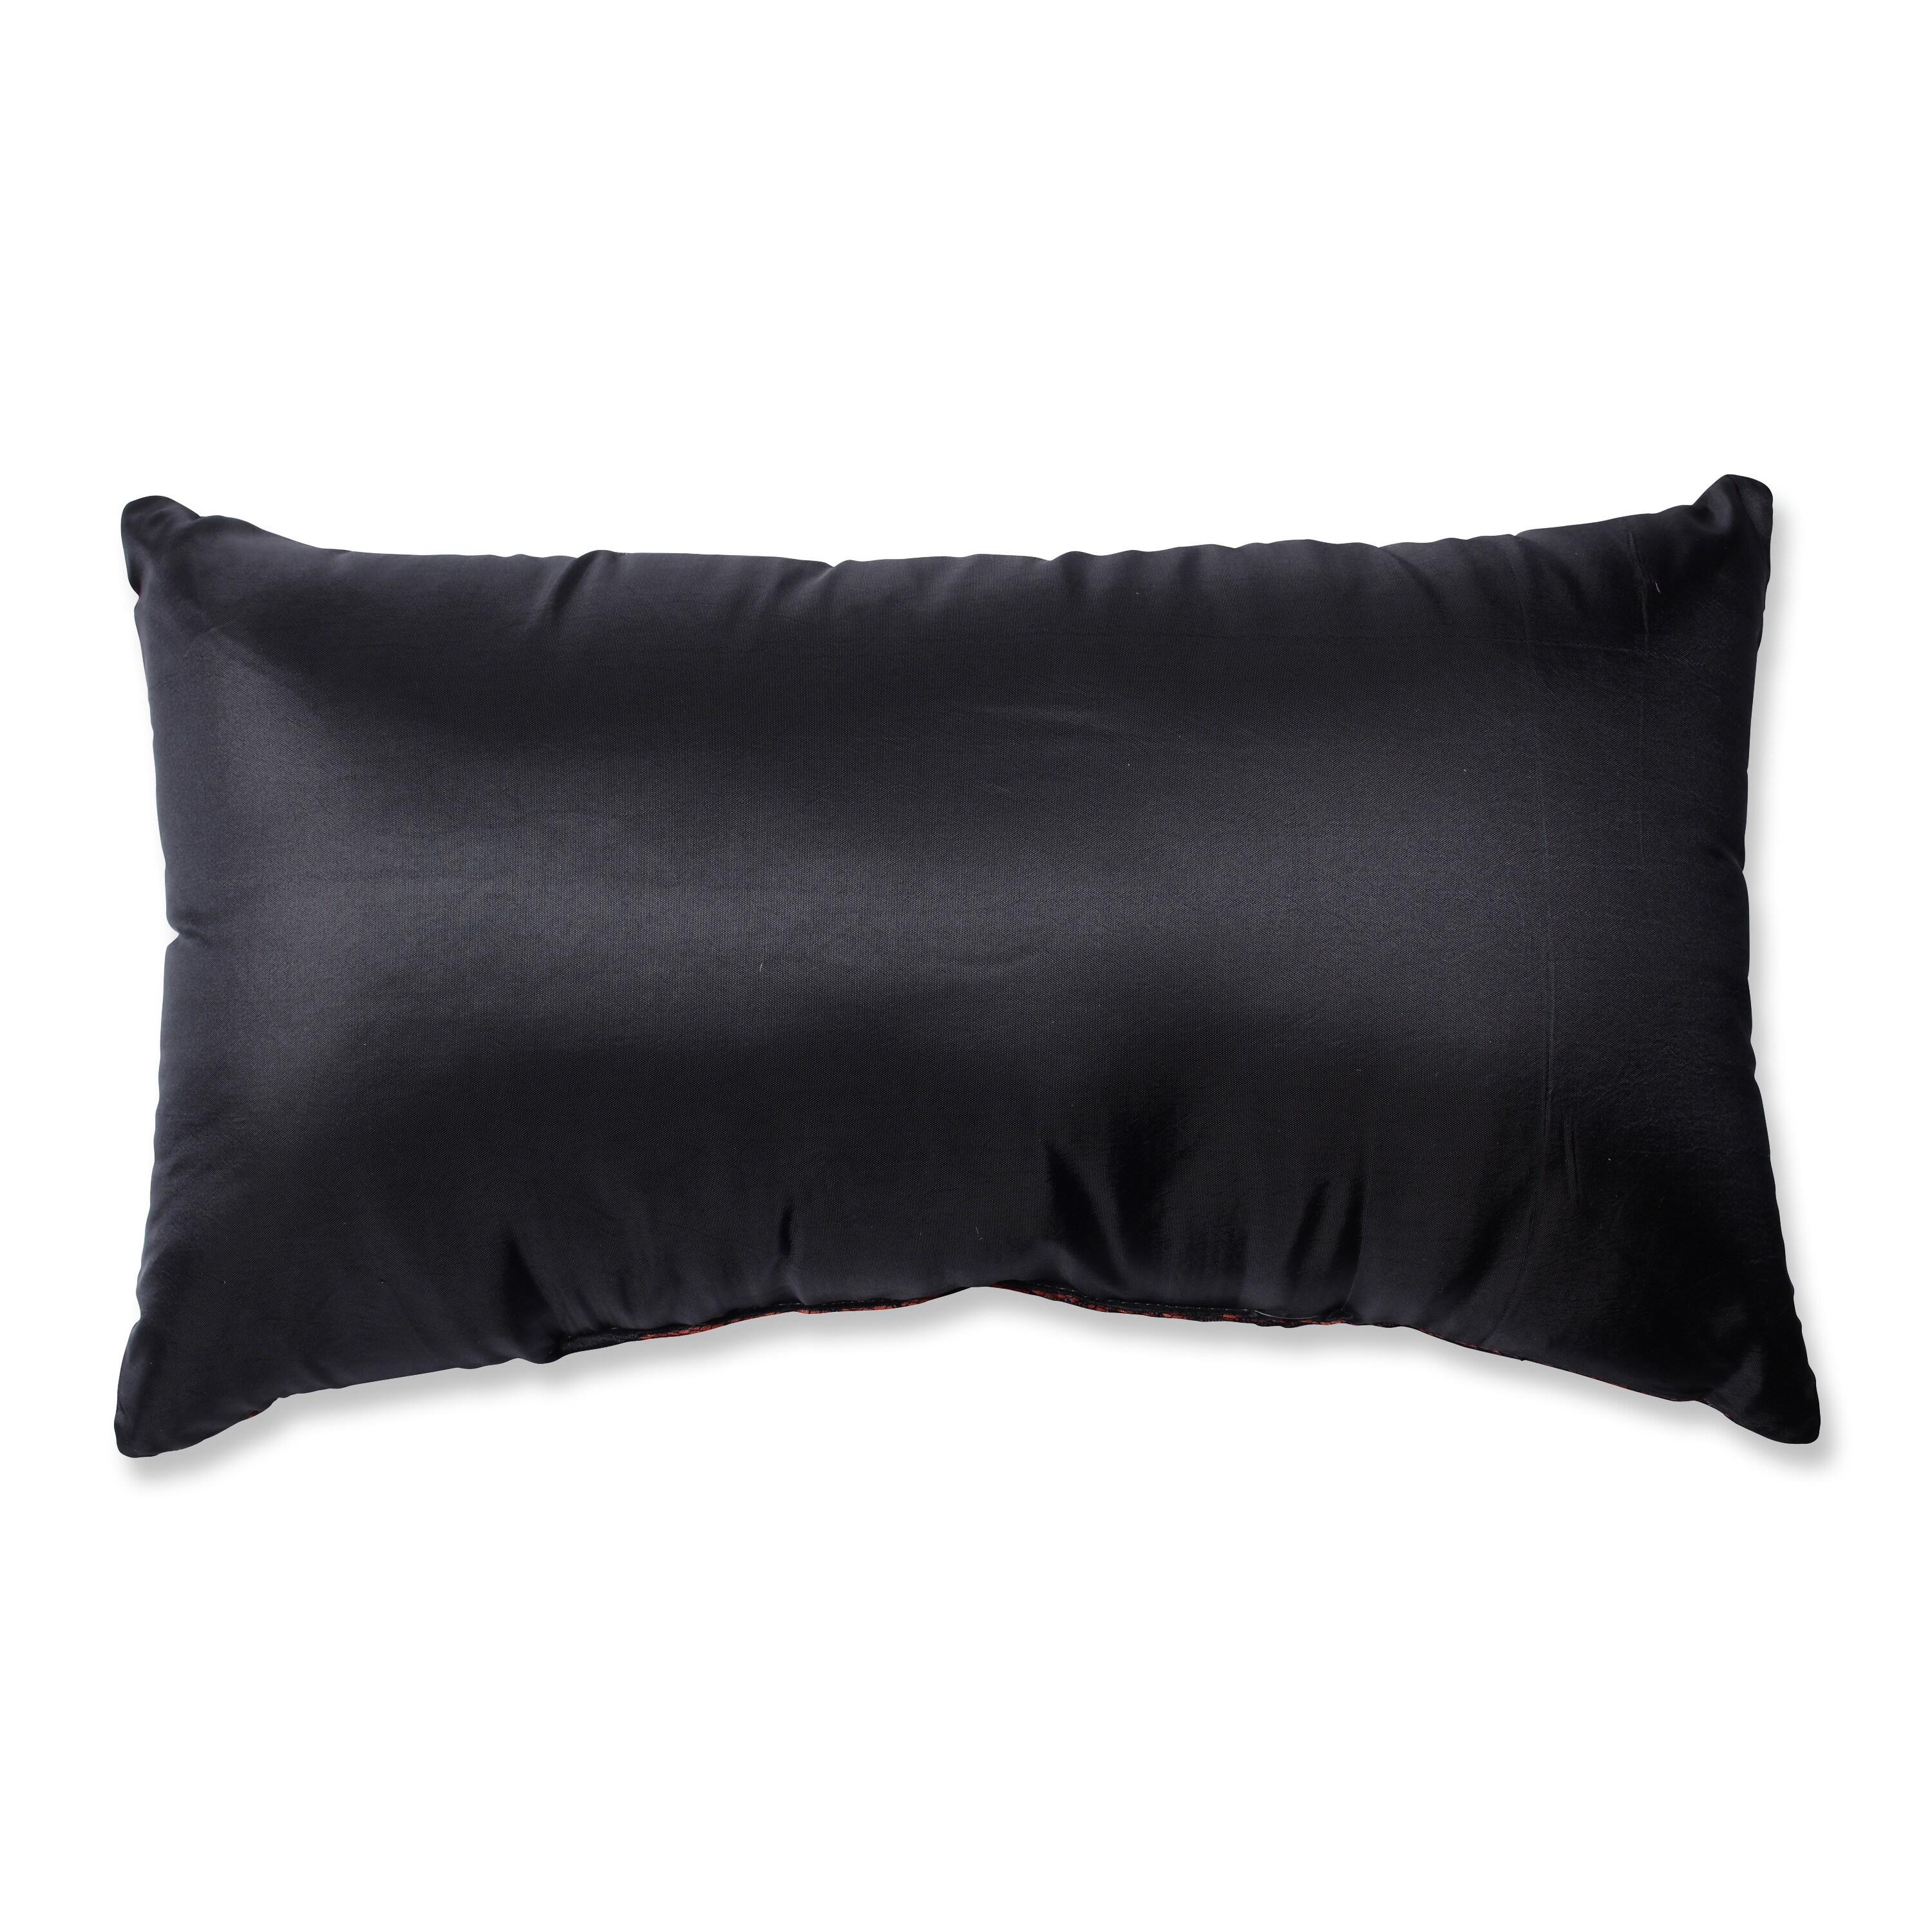 Pillow Perfect 'Boo' Orange Rectangular Throw Pillow